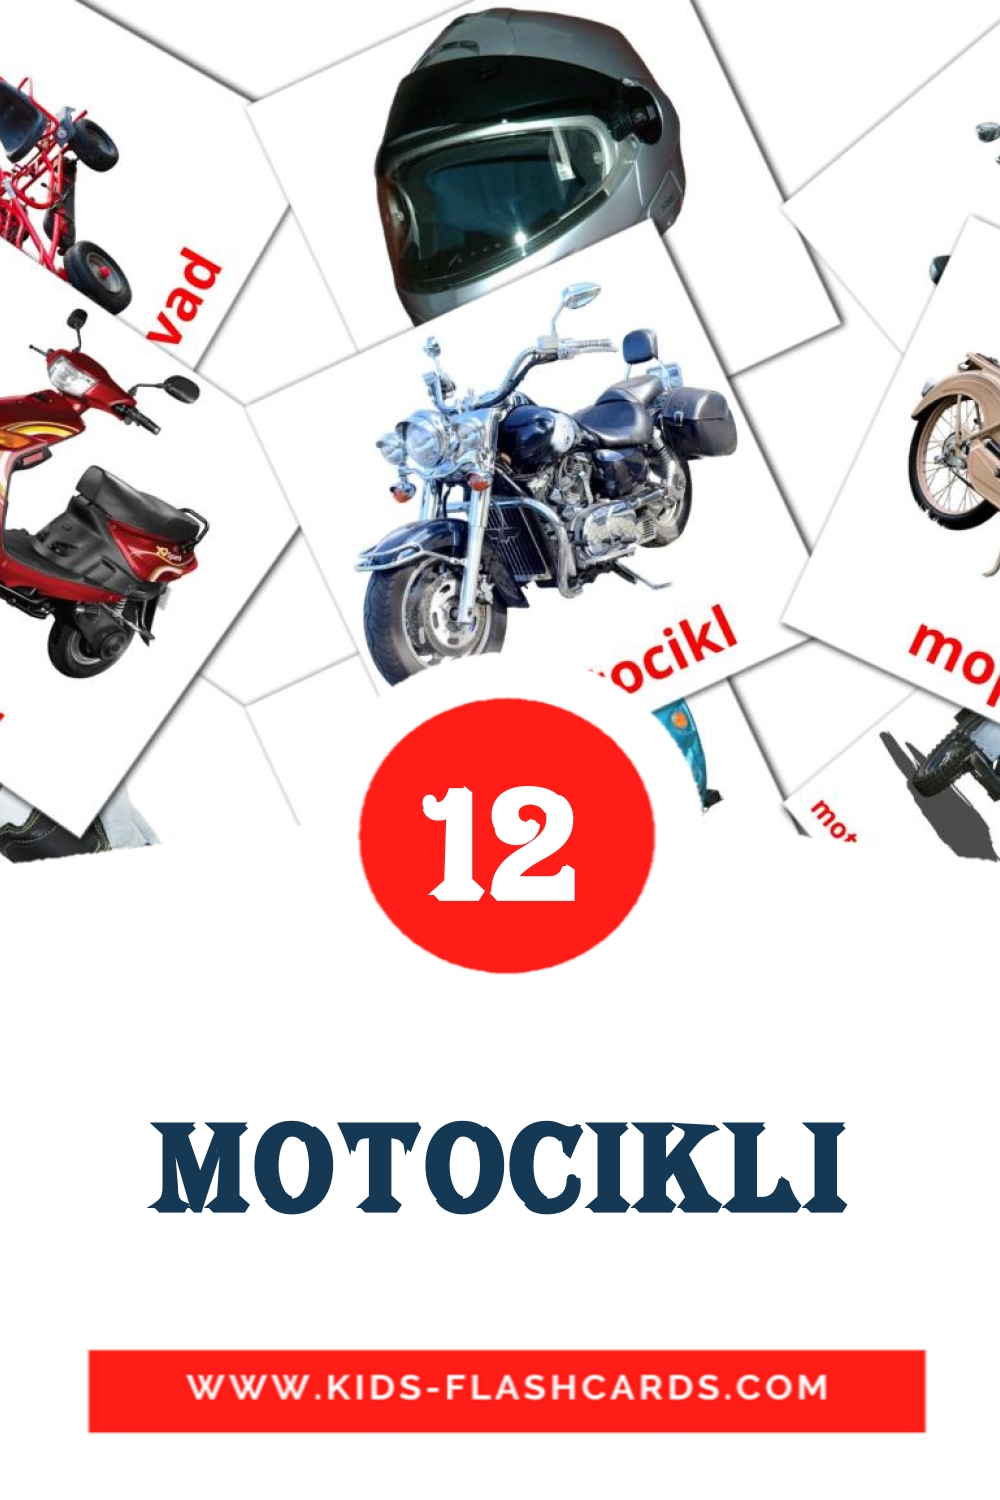 12 Cartões com Imagens de Motocikli para Jardim de Infância em sérvio